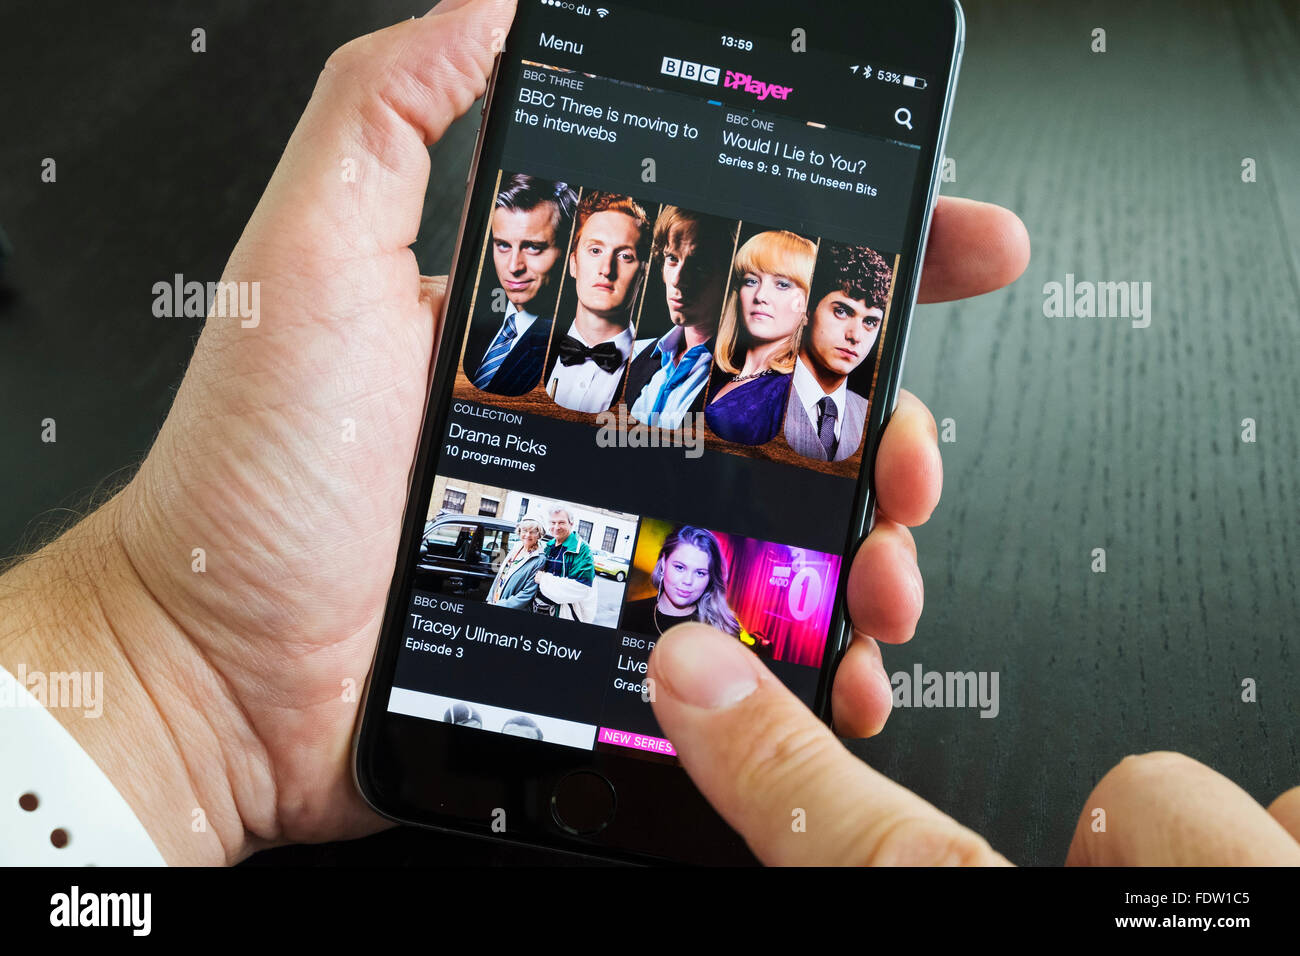 Écran d'accueil de BBC iPlayer catchup TV streaming sur iPhone 6 Plus smart phone Banque D'Images